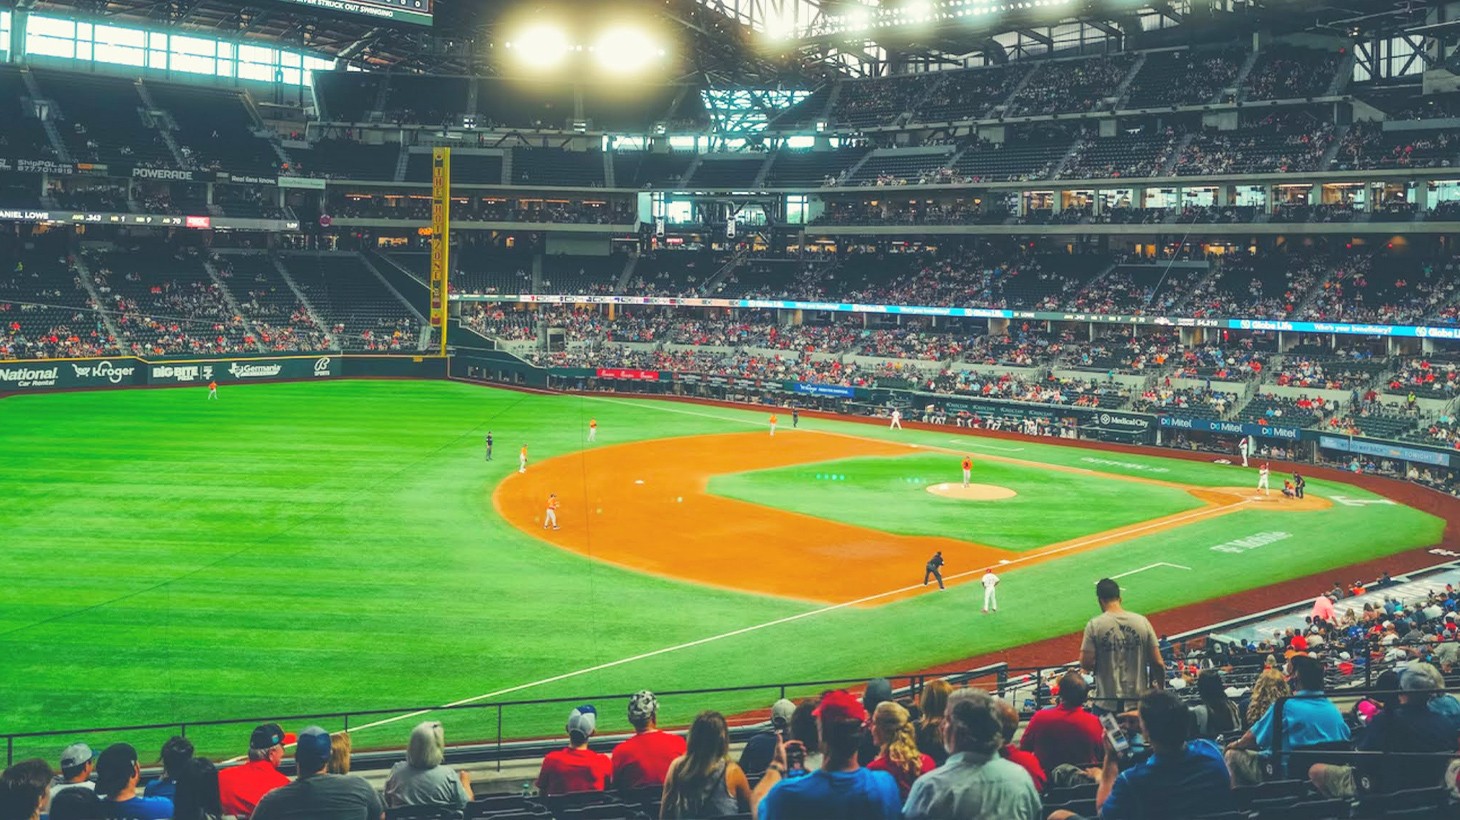 Globe Life Park, the home field of the Texas Rangers Major League Baseball  team in Arlington, Texas